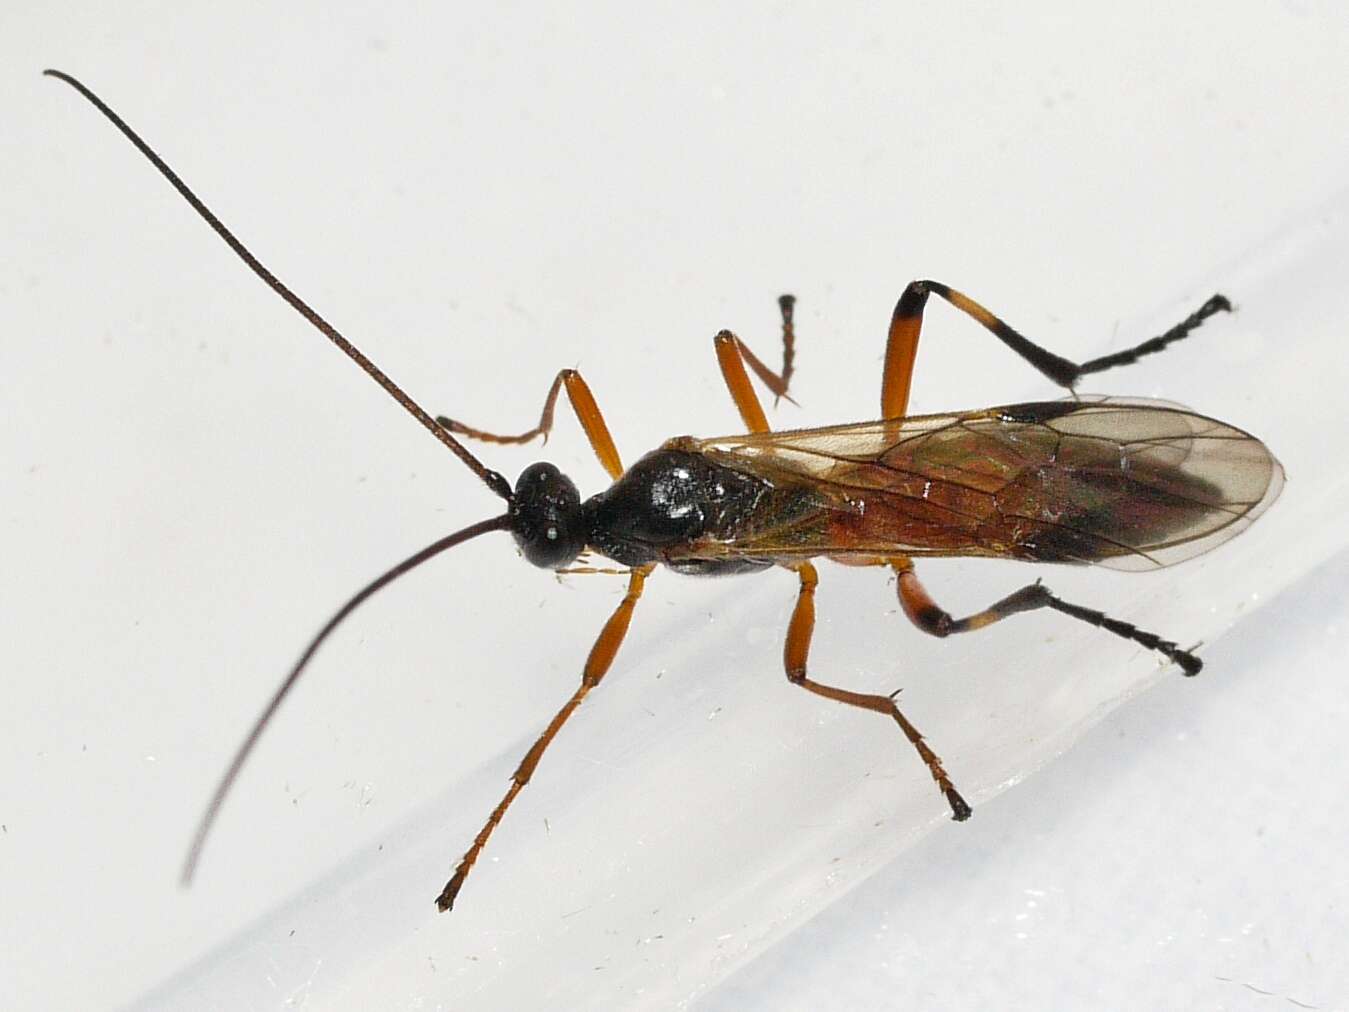 Image of Mummy-wasps